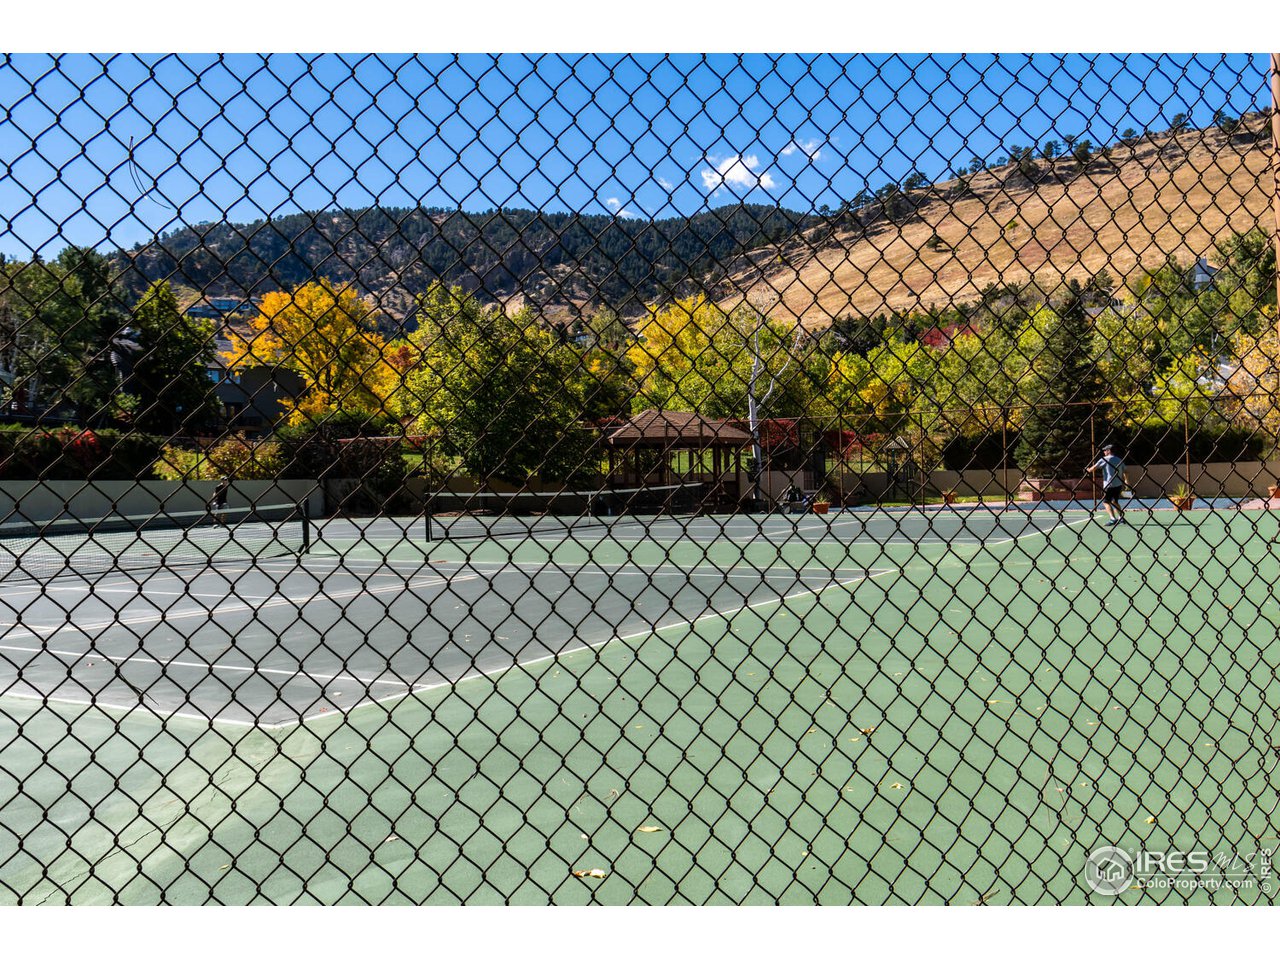 Neighborhood tennis